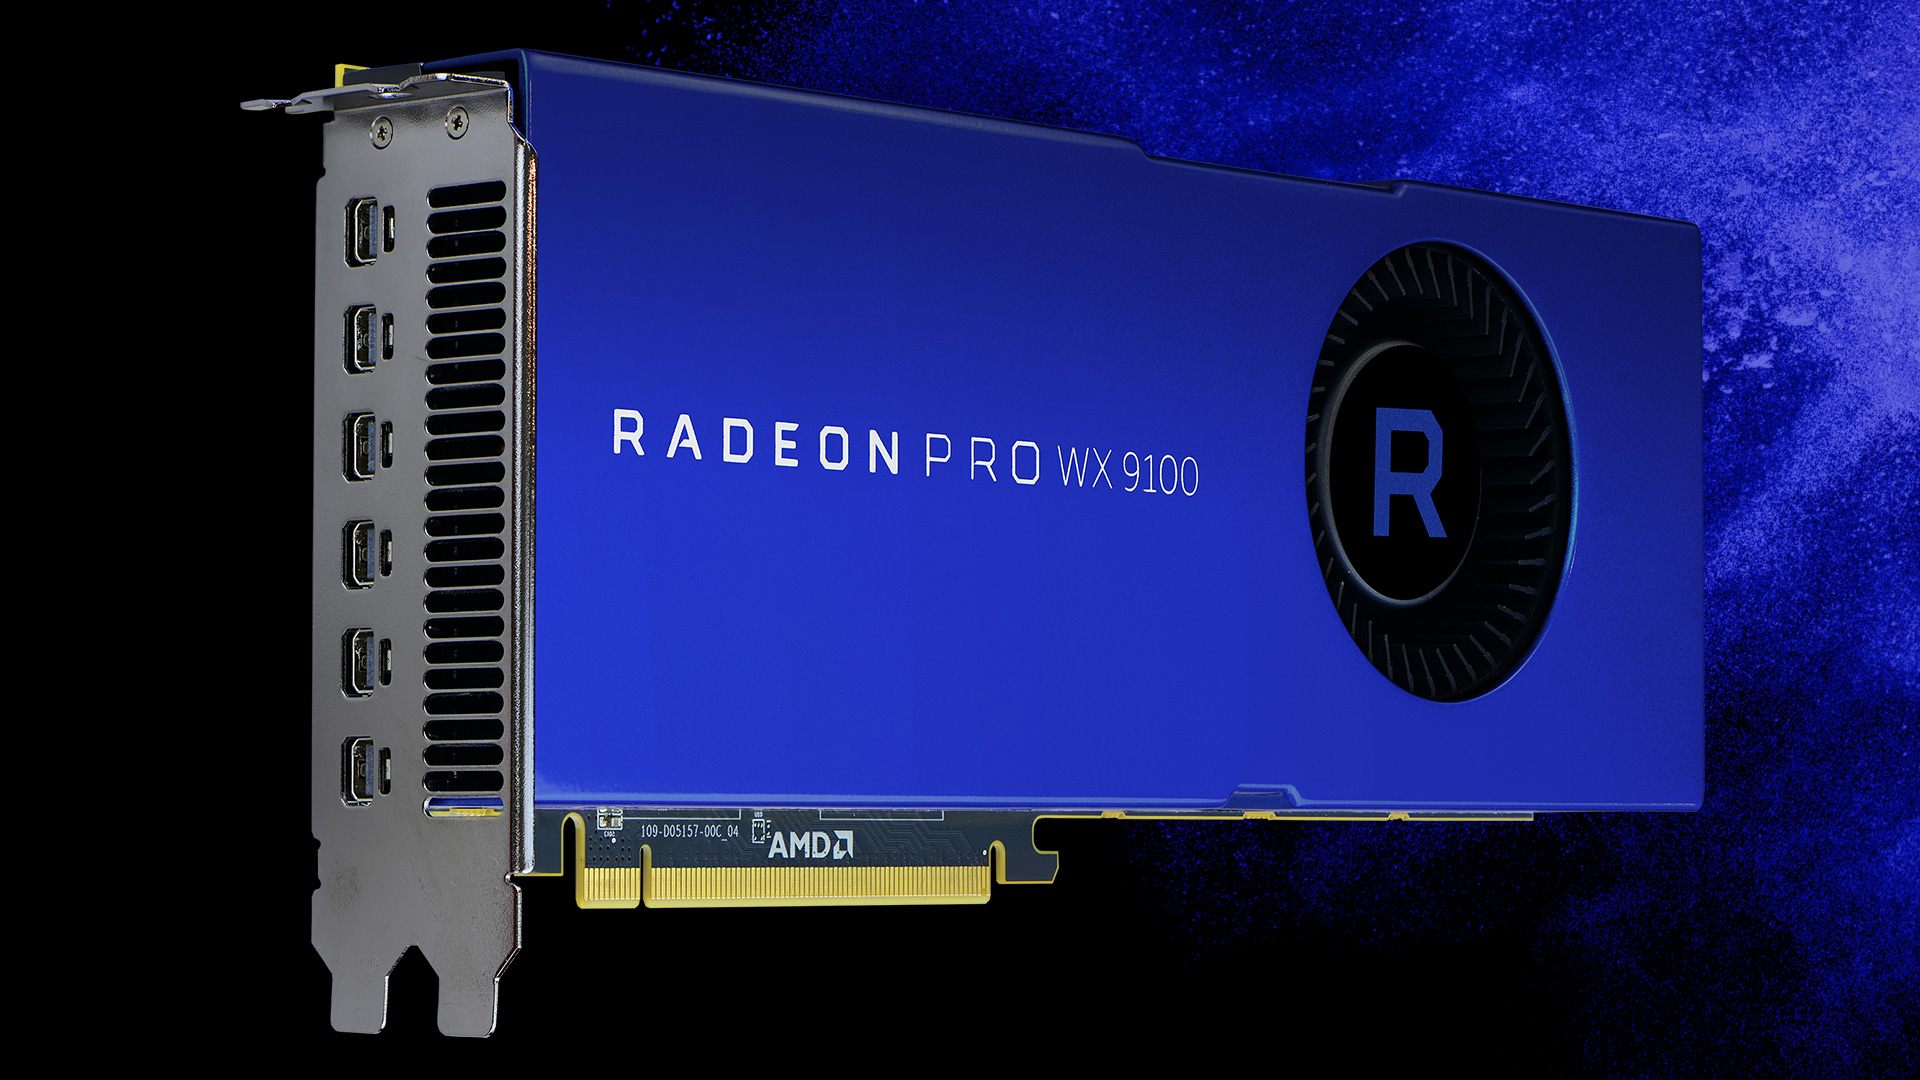 Radeon™ Pro WX 9100 and Radeon™ Pro 